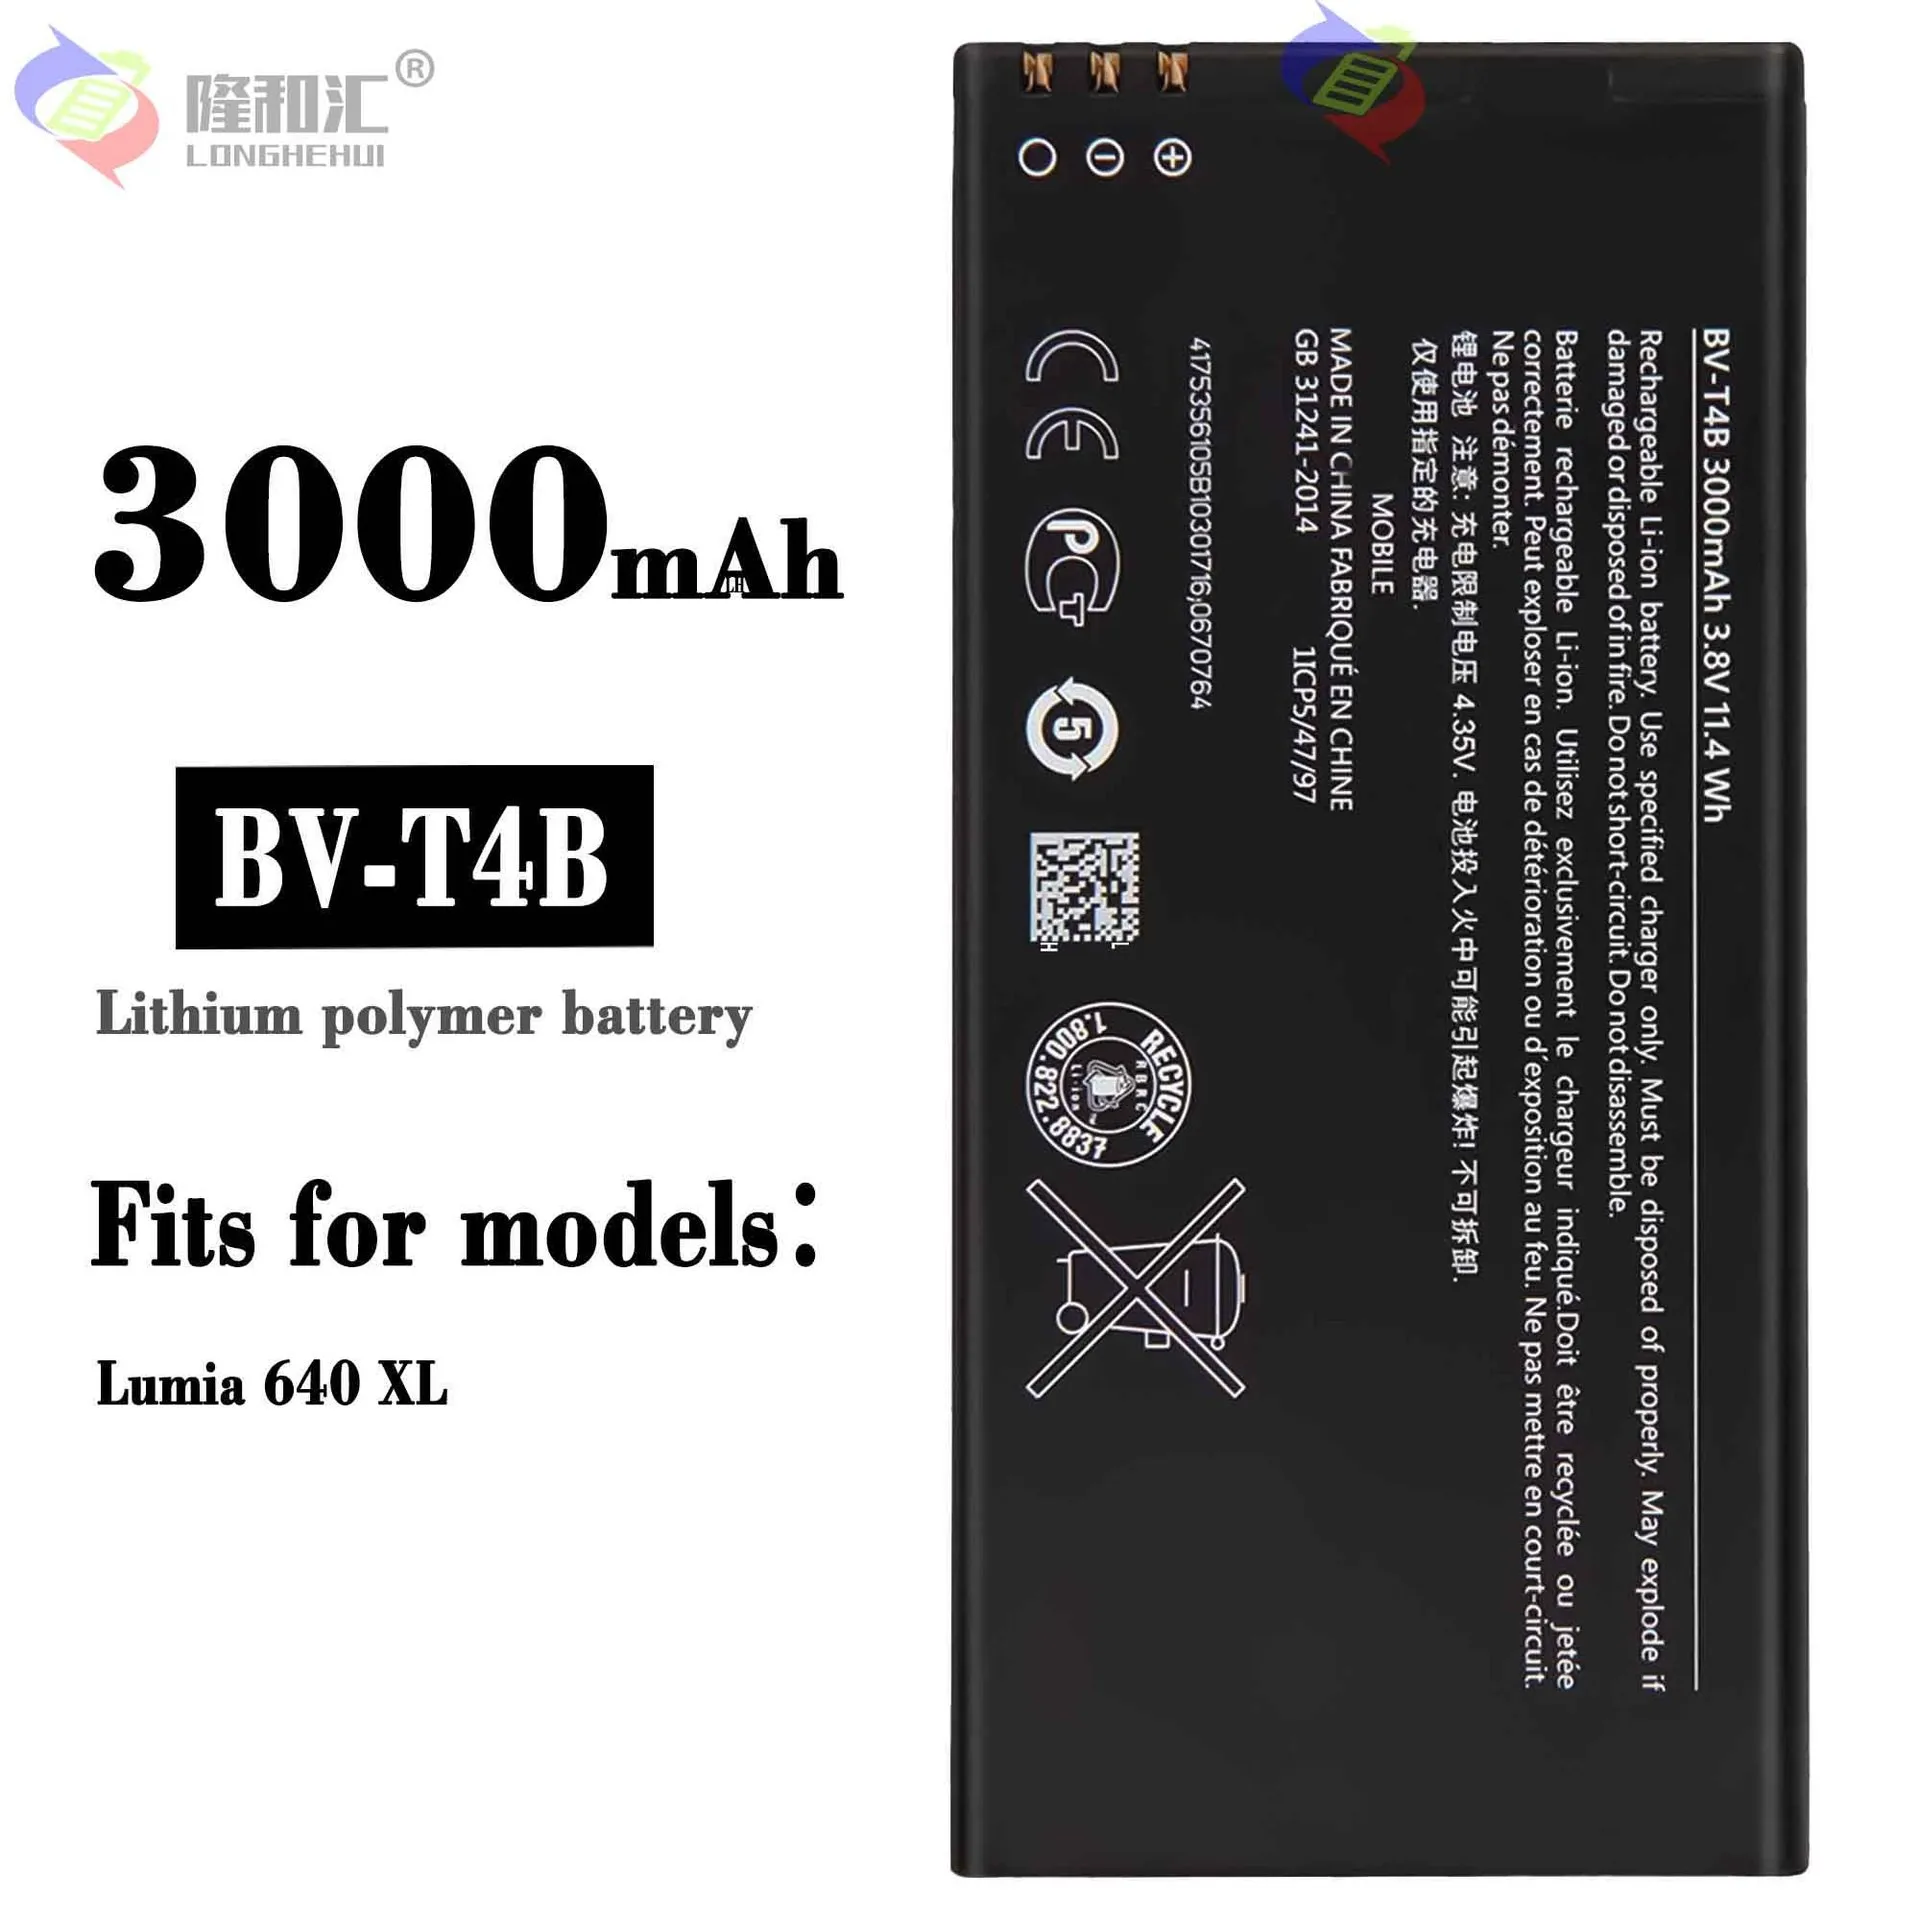 

Original BV-T4B 3000mAh Replacement Battery For Nokia Lumia 640XL RM-1096 RM-1062 RM-1063 RM-1064 RM-1066 Lumia 640 XL Batteries